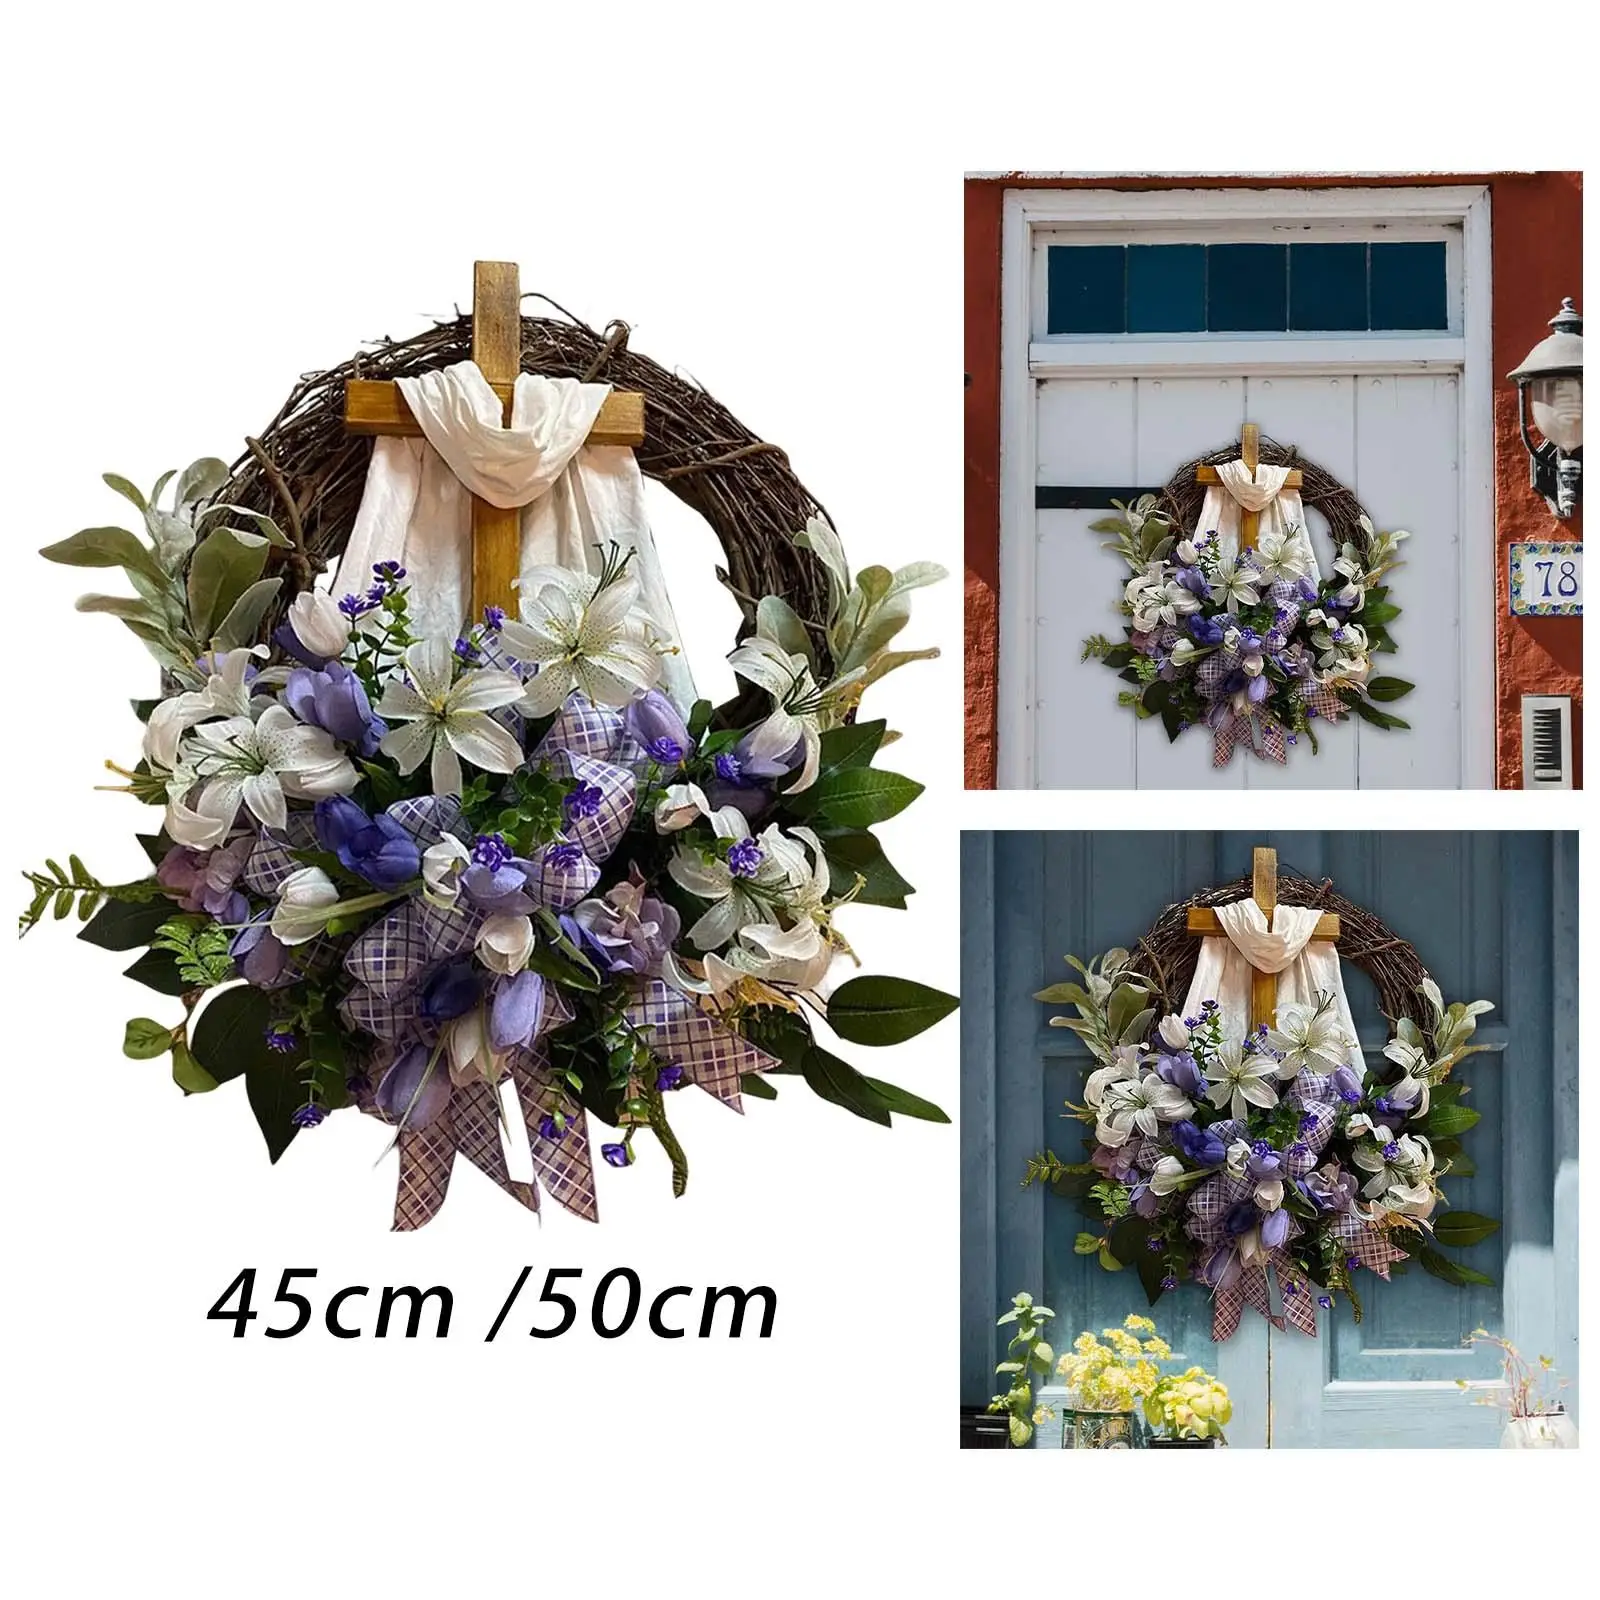 Easter Wreath with Cross Door Hanging Decorative Wreath for Weddings, Parties, Gardens, Hotels Exquisite Workmanship Rustic